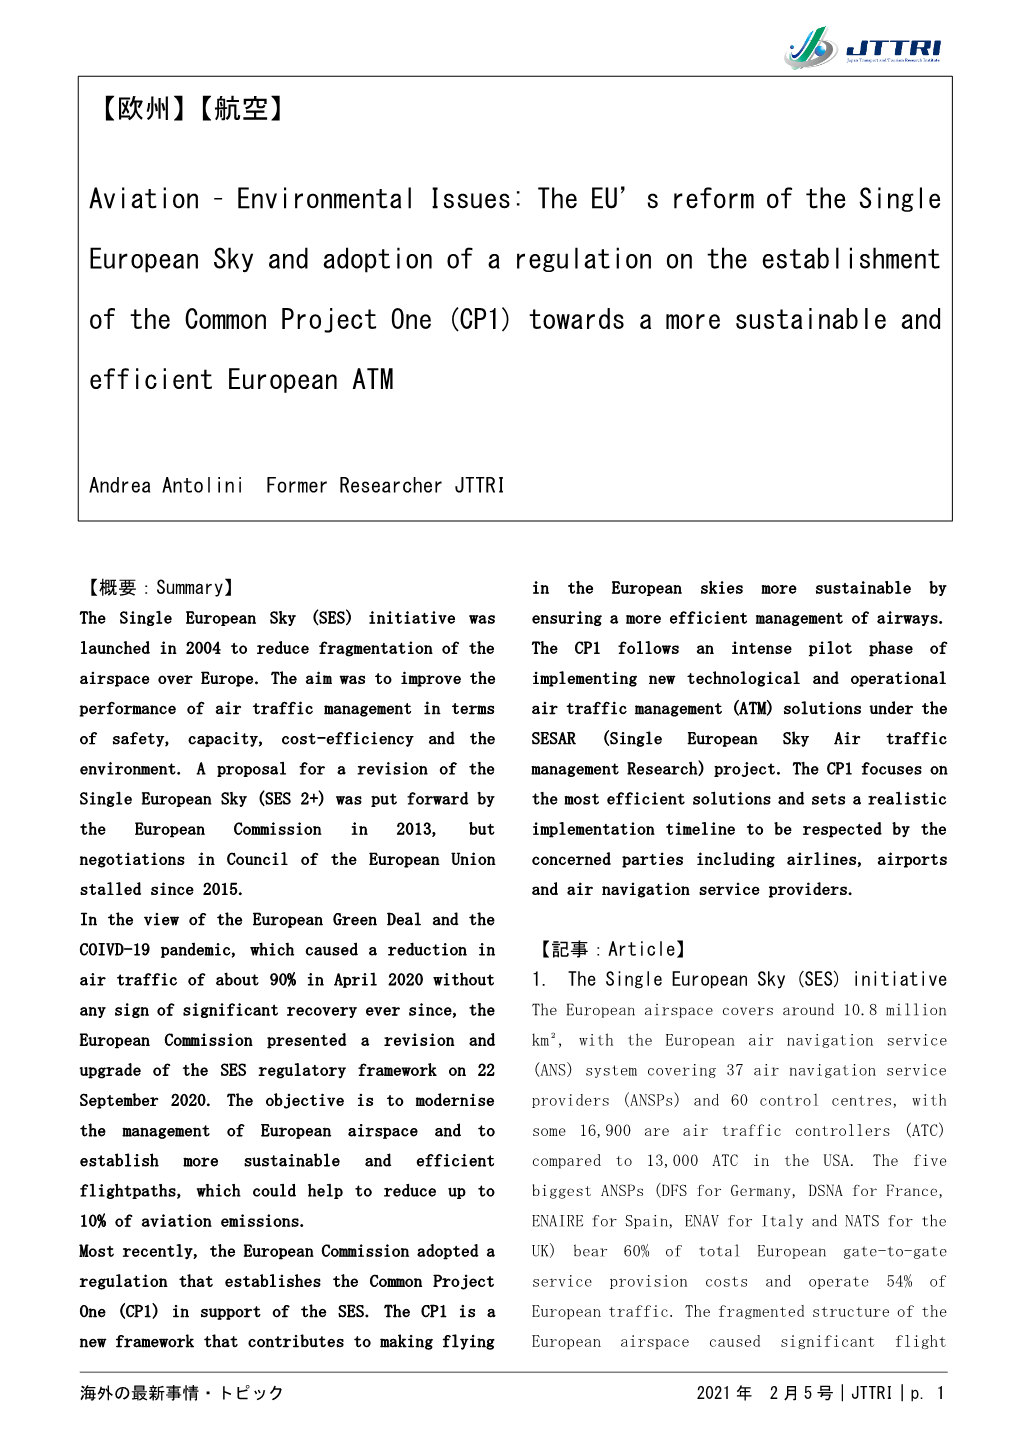 【欧州】【航空】 Aviation – Environmental Issues: the EU's Reform of the Single European Sky and Adoption of a Regul